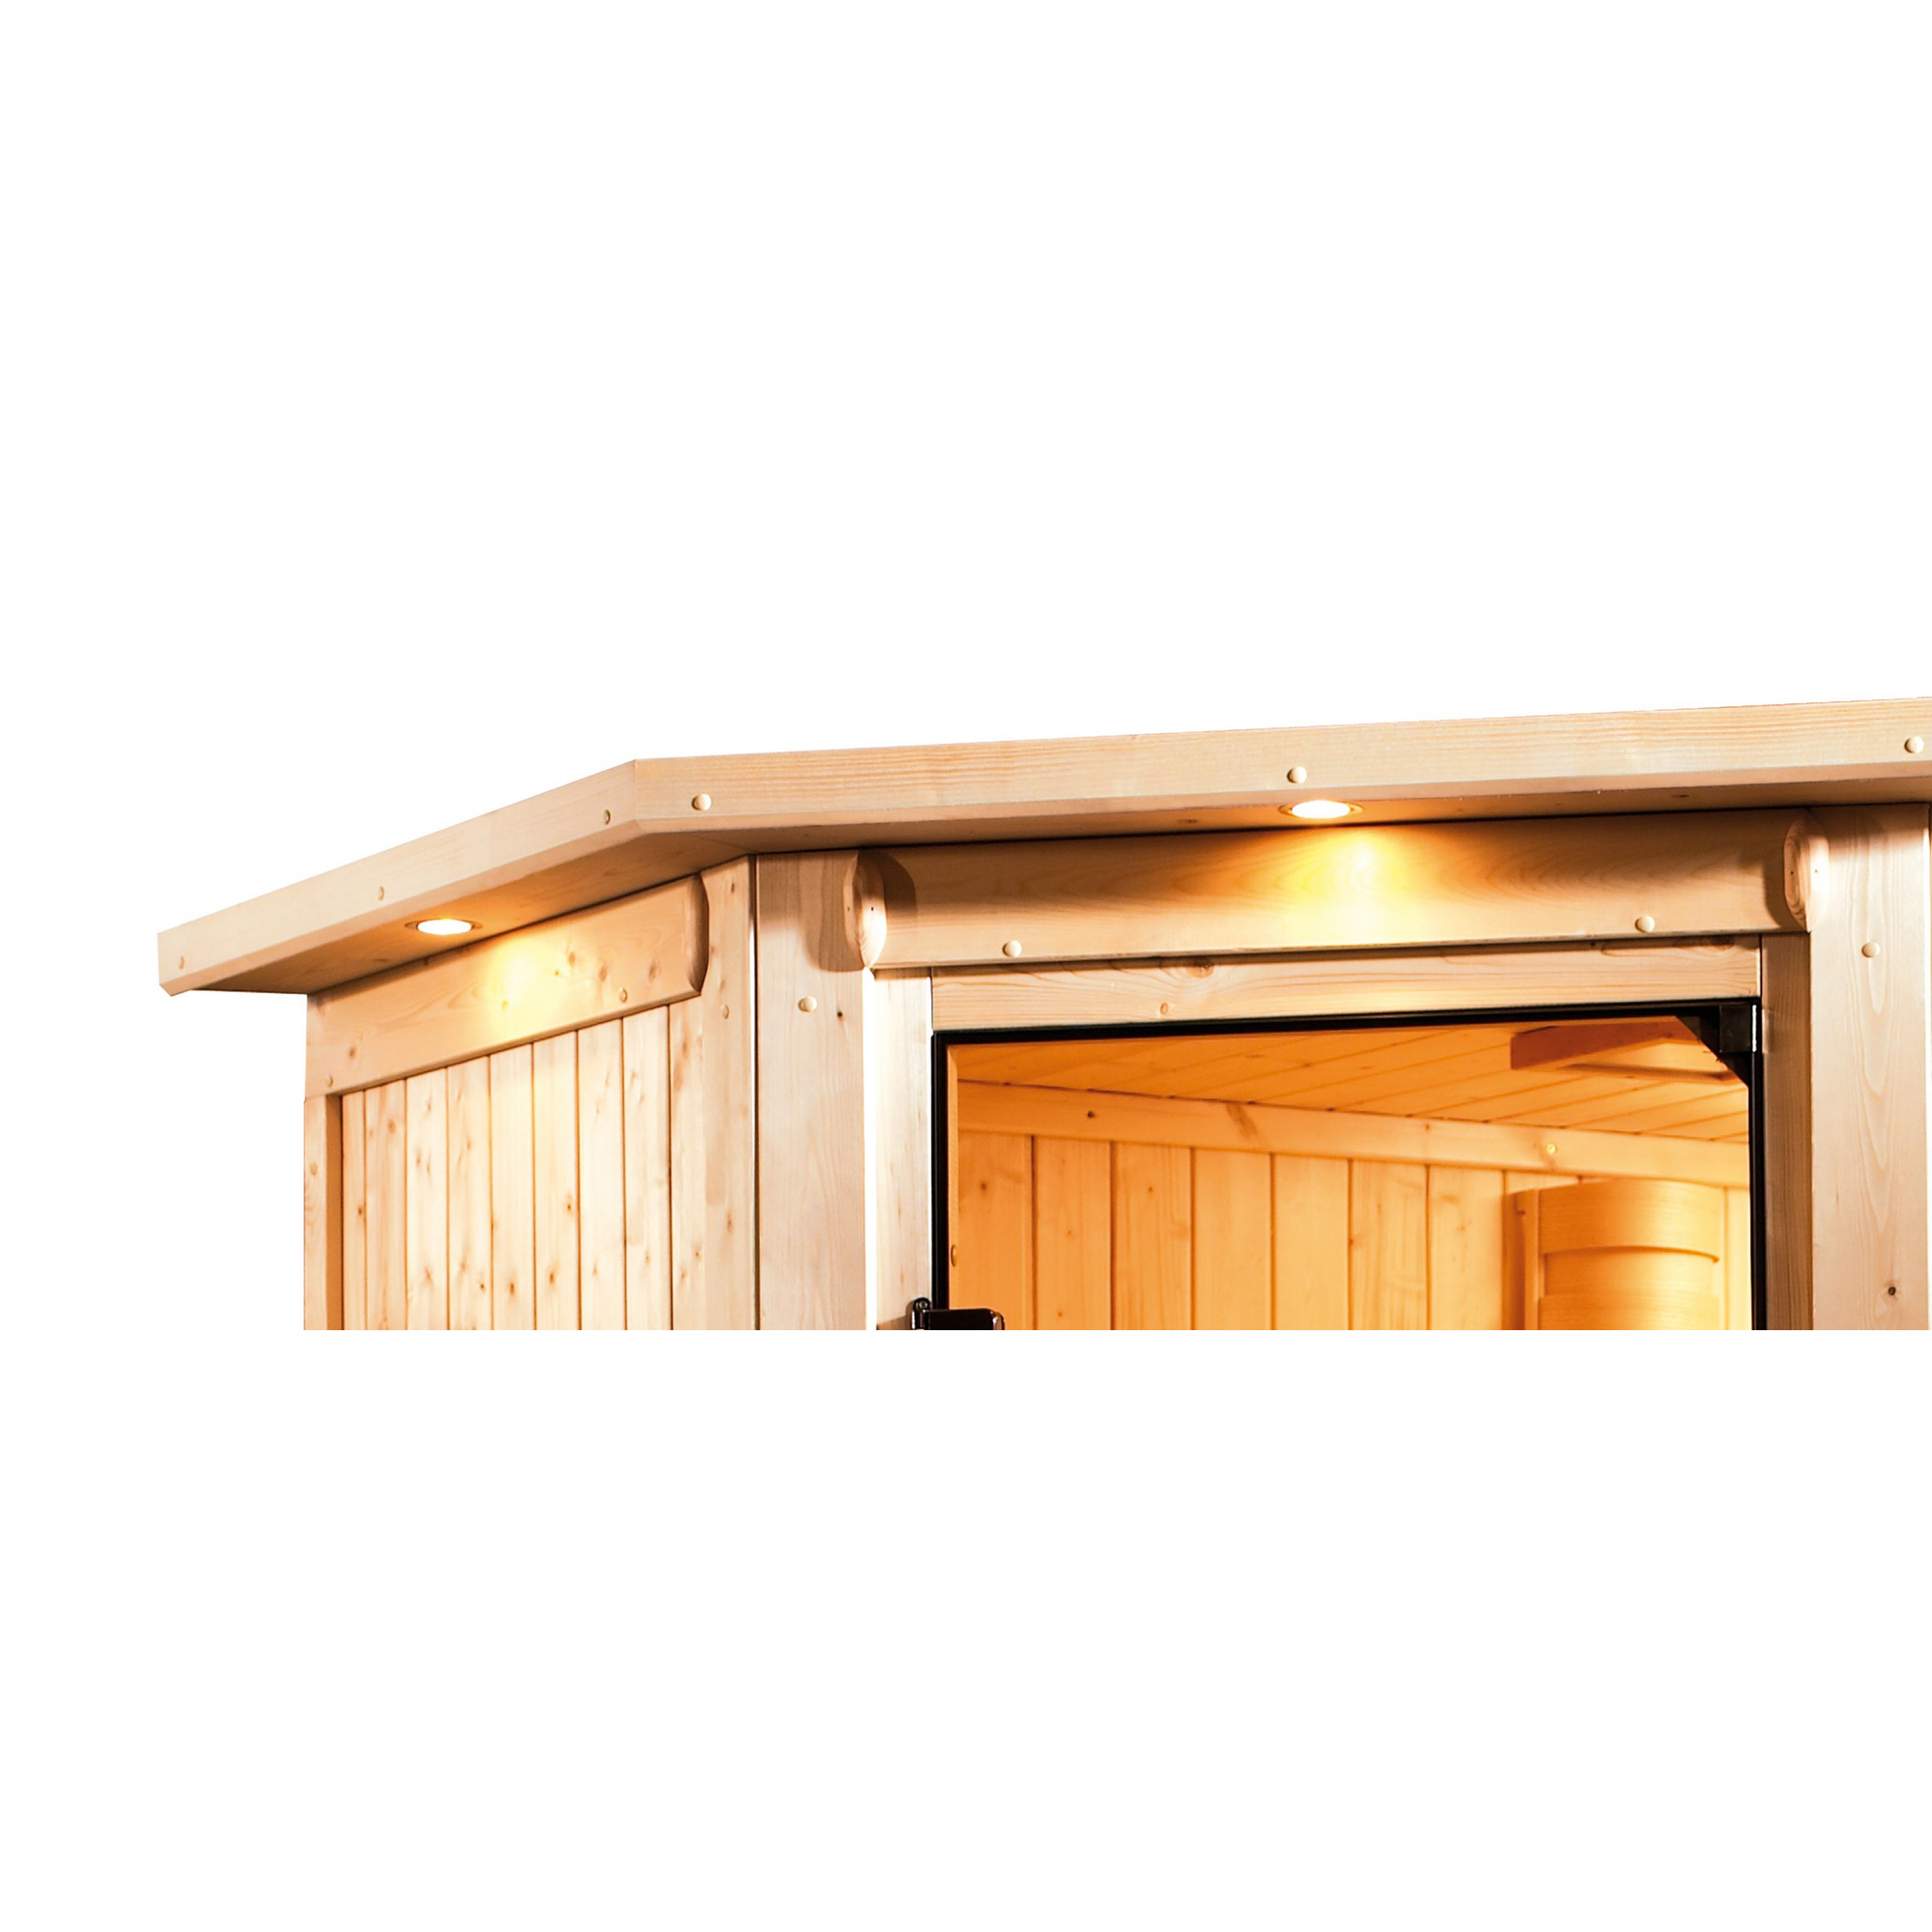 Massivholzsauna 'Julieta' naturbelassen mit Kranz und bronzierter Tür 9 kW Bio-Ofen externe Steuerung modern 224 x 184 x 202 cm + product picture